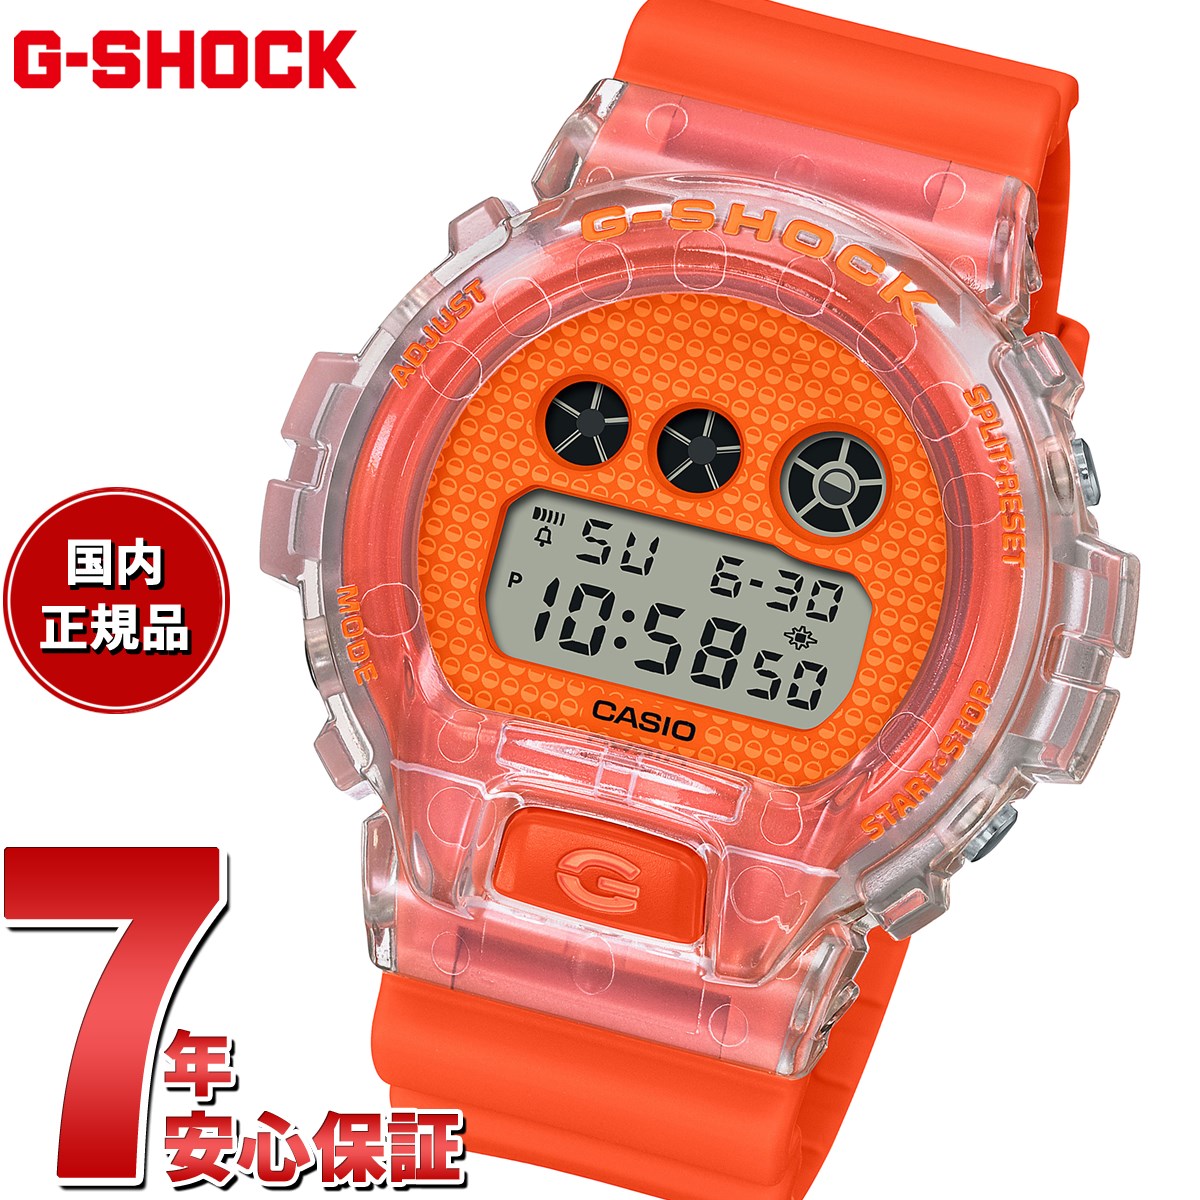 G-SHOCK デジタル カシオ Gショック CASIO デジタル 腕時計 メンズ DW